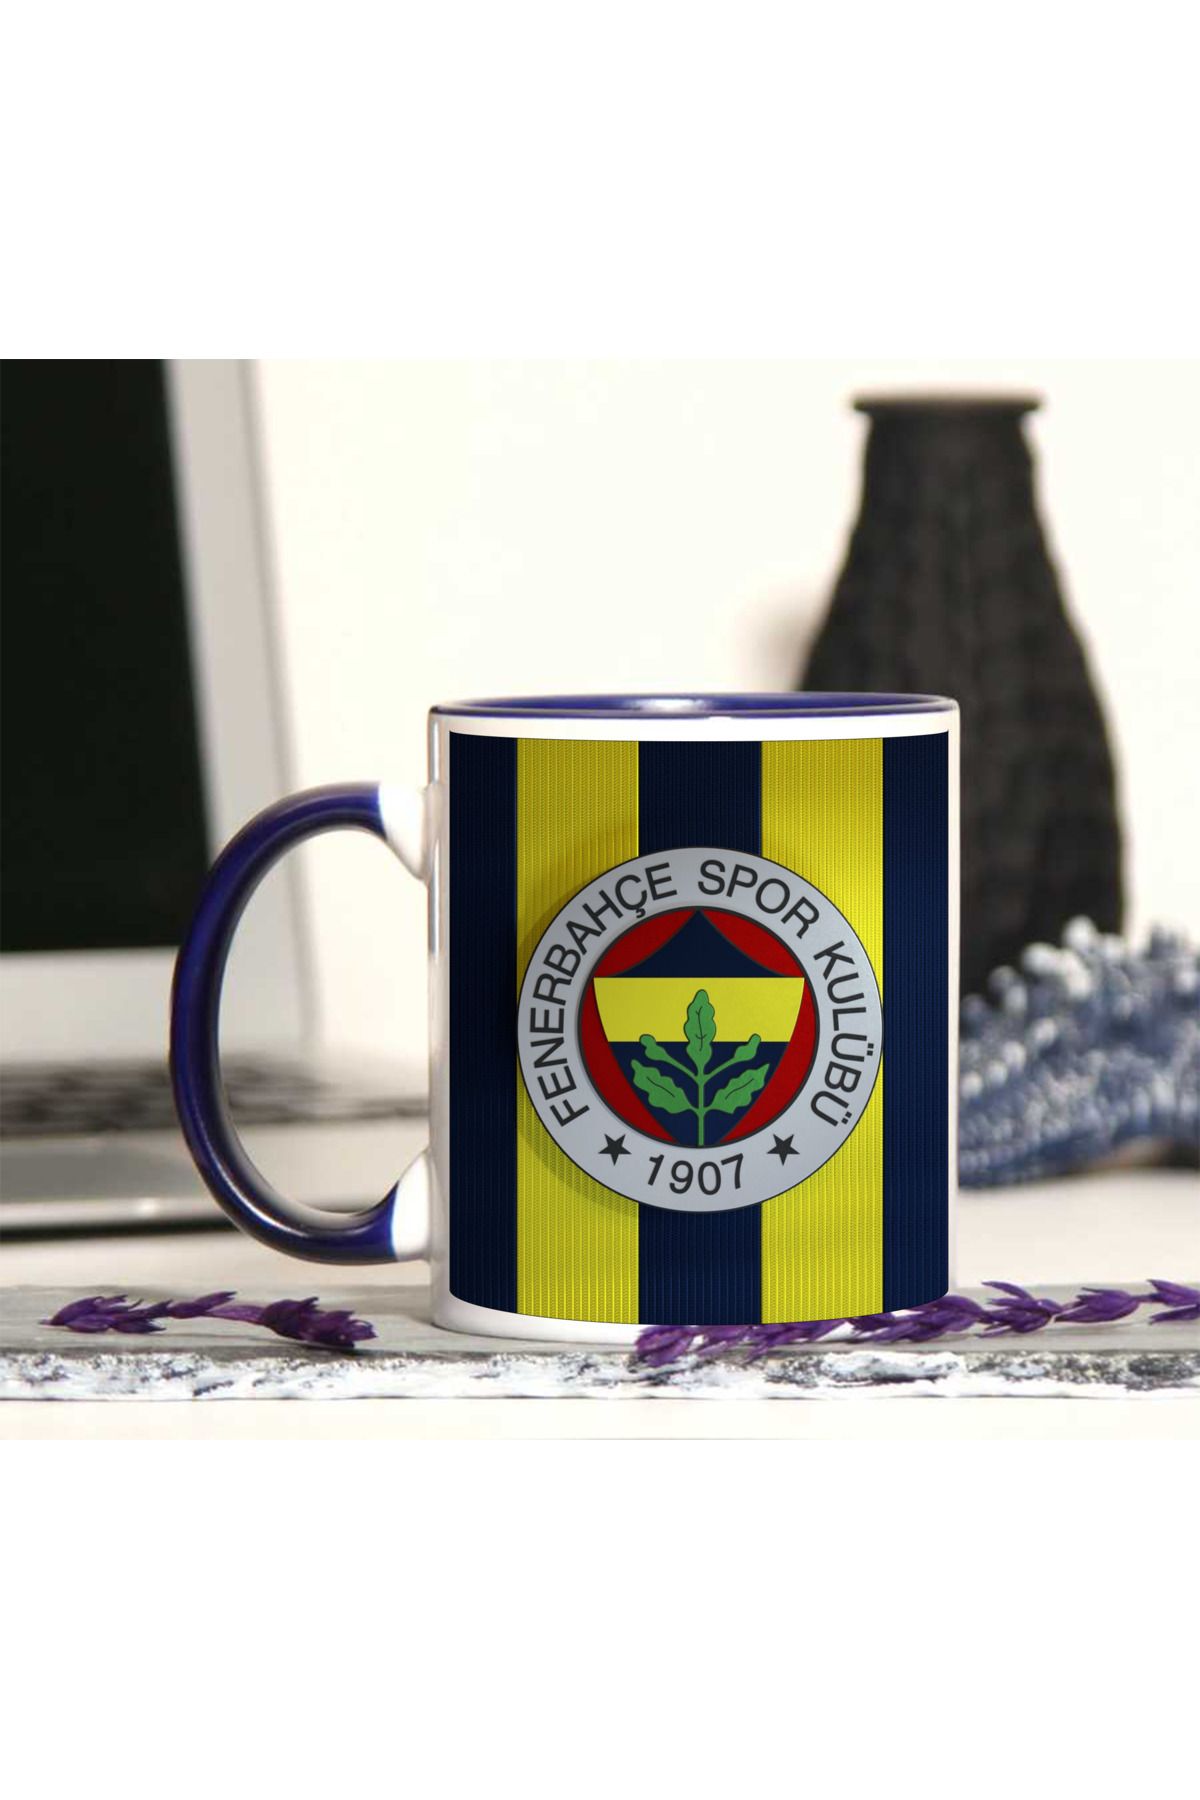 Atölyehane Fenerbahçe tasarımlı içi ve kulbu renkli porselen kupa bardak